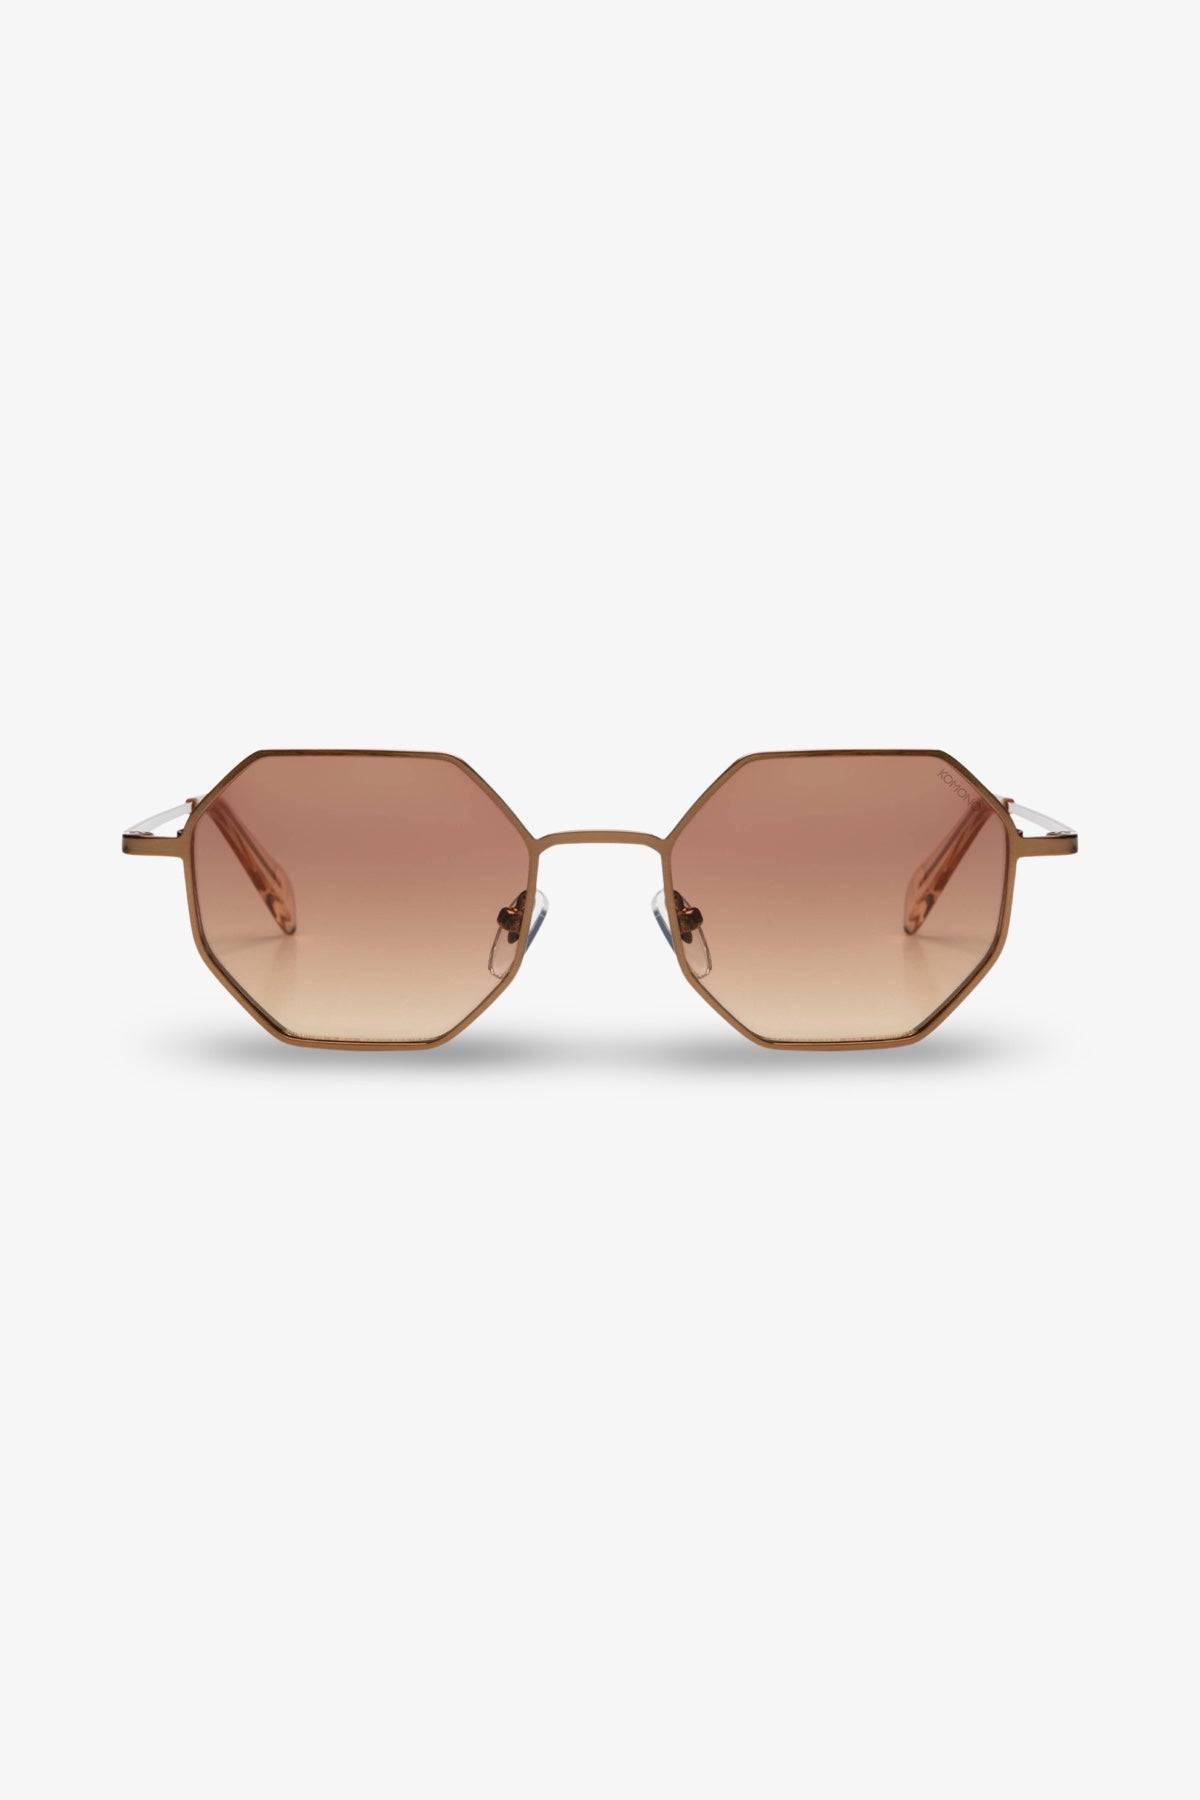 Jean Sunglasses | Pale Copper